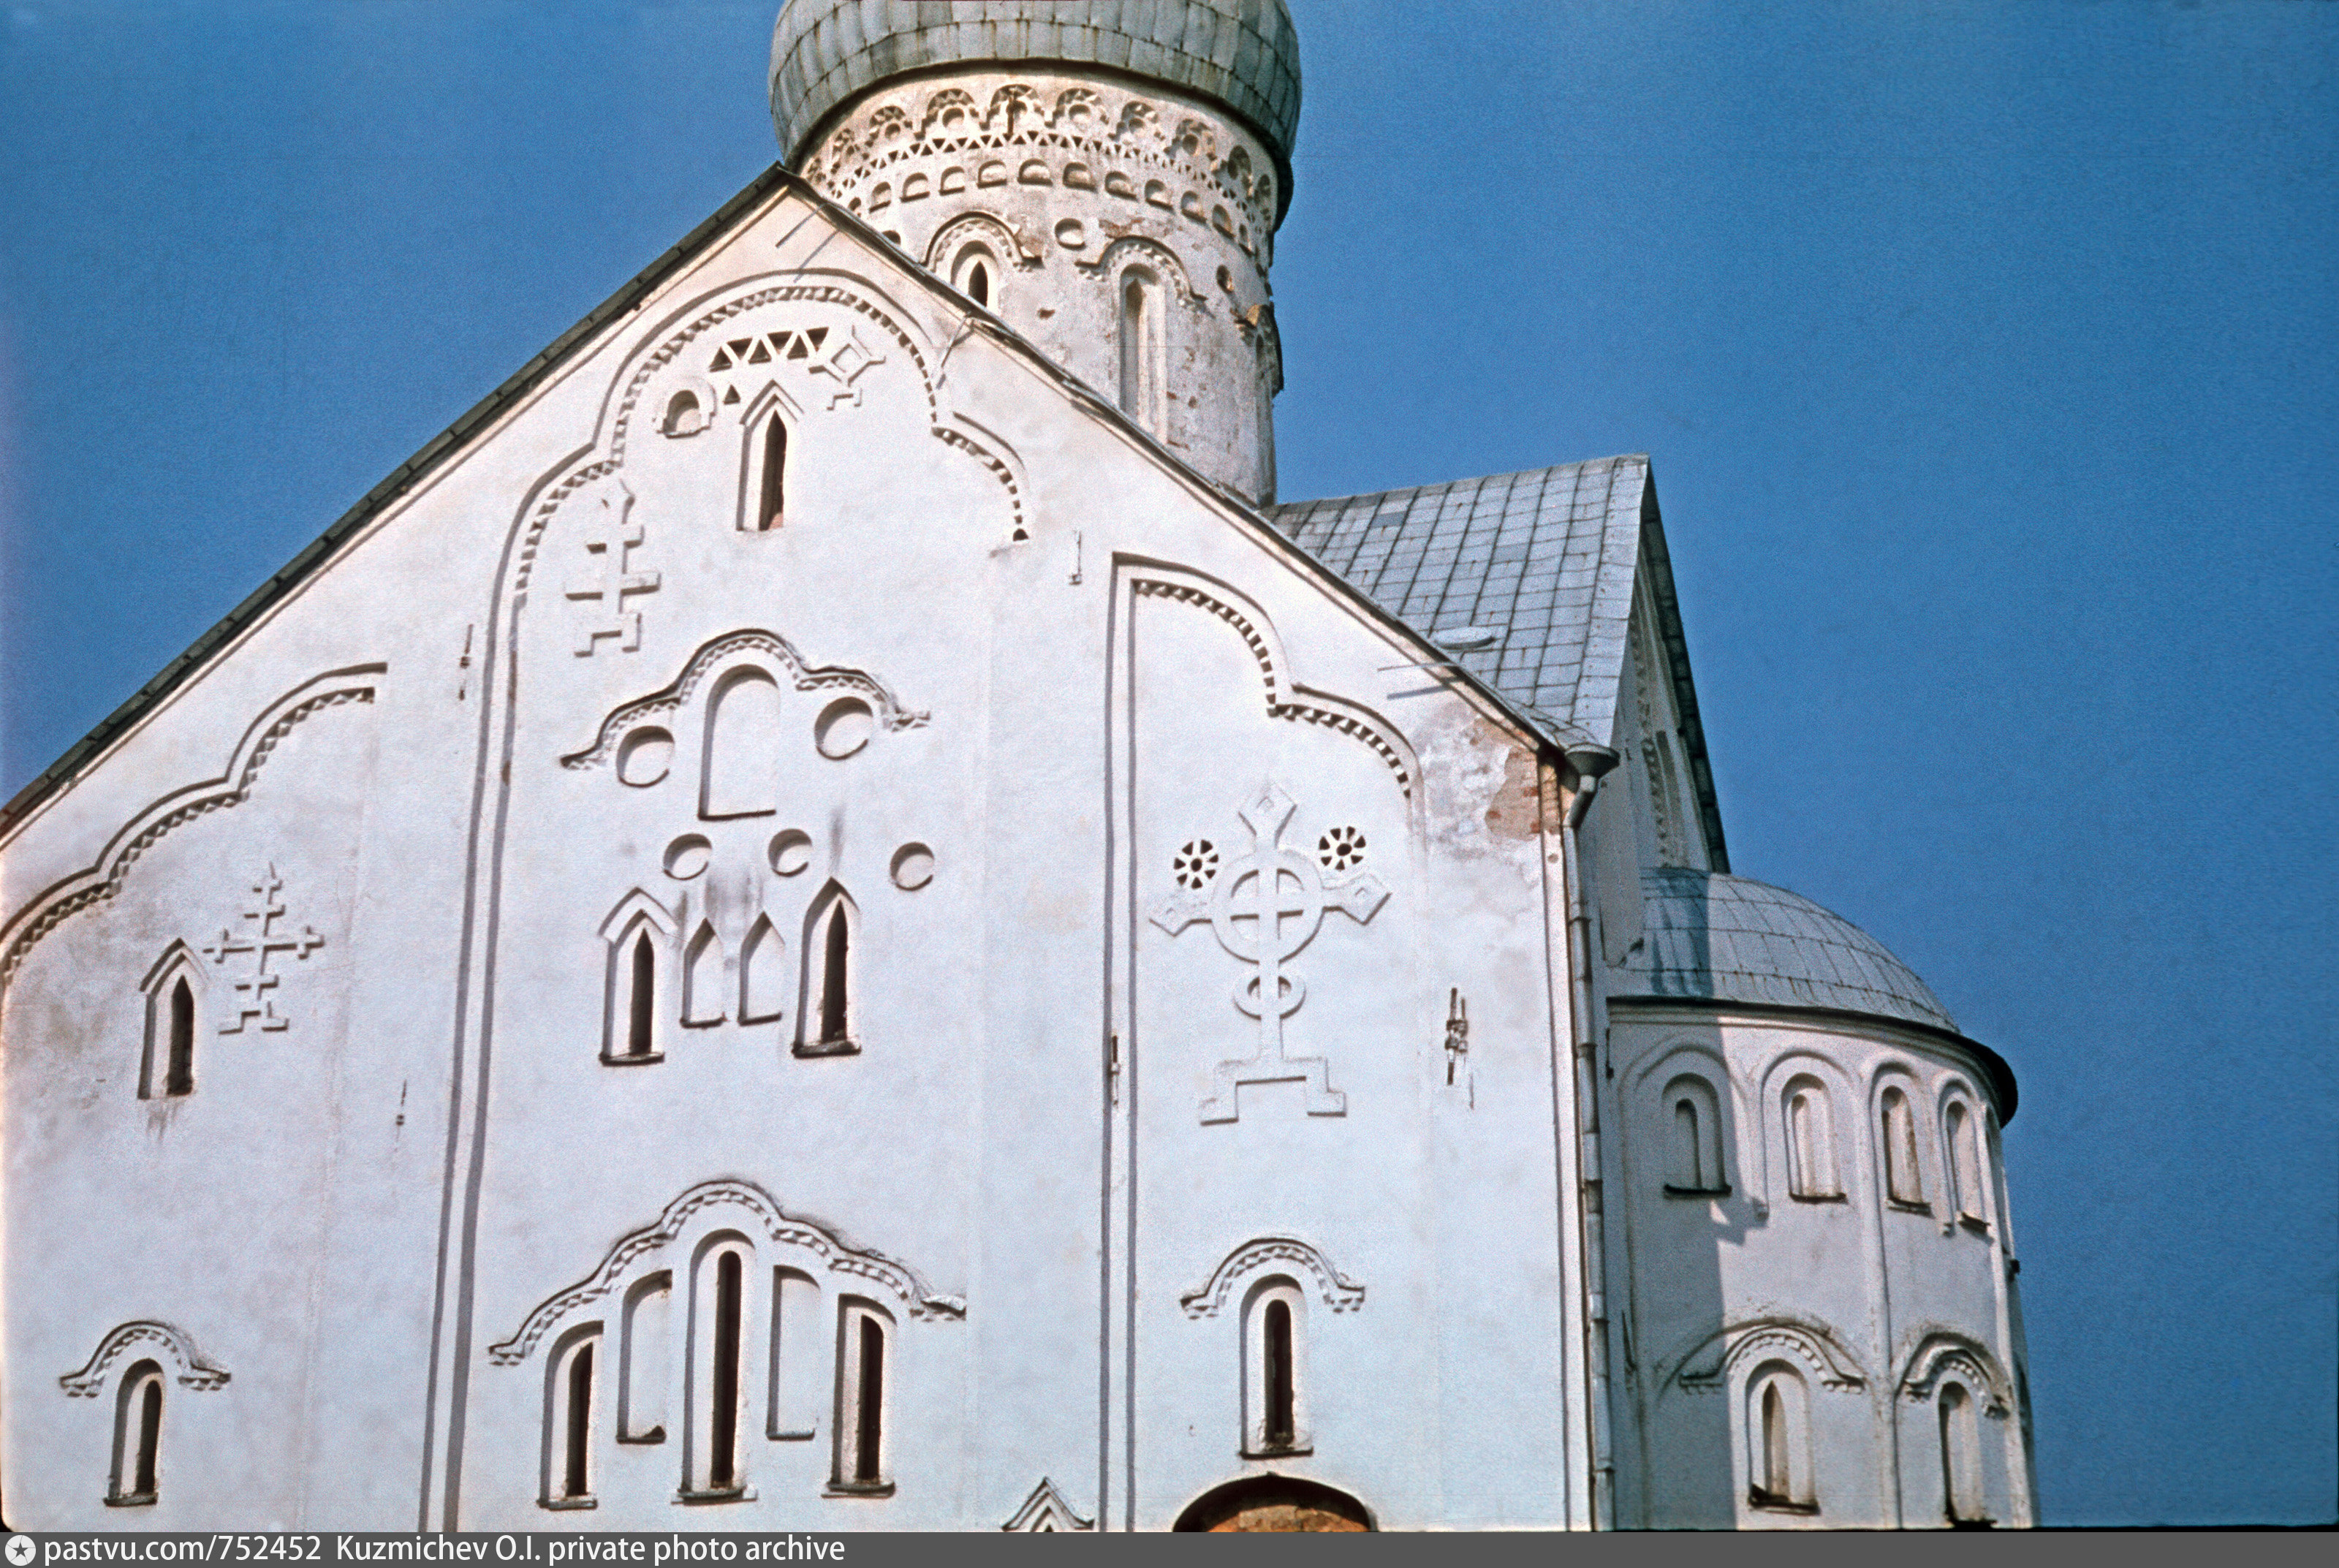 Фото церковь спаса преображения на ильине улице в новгороде